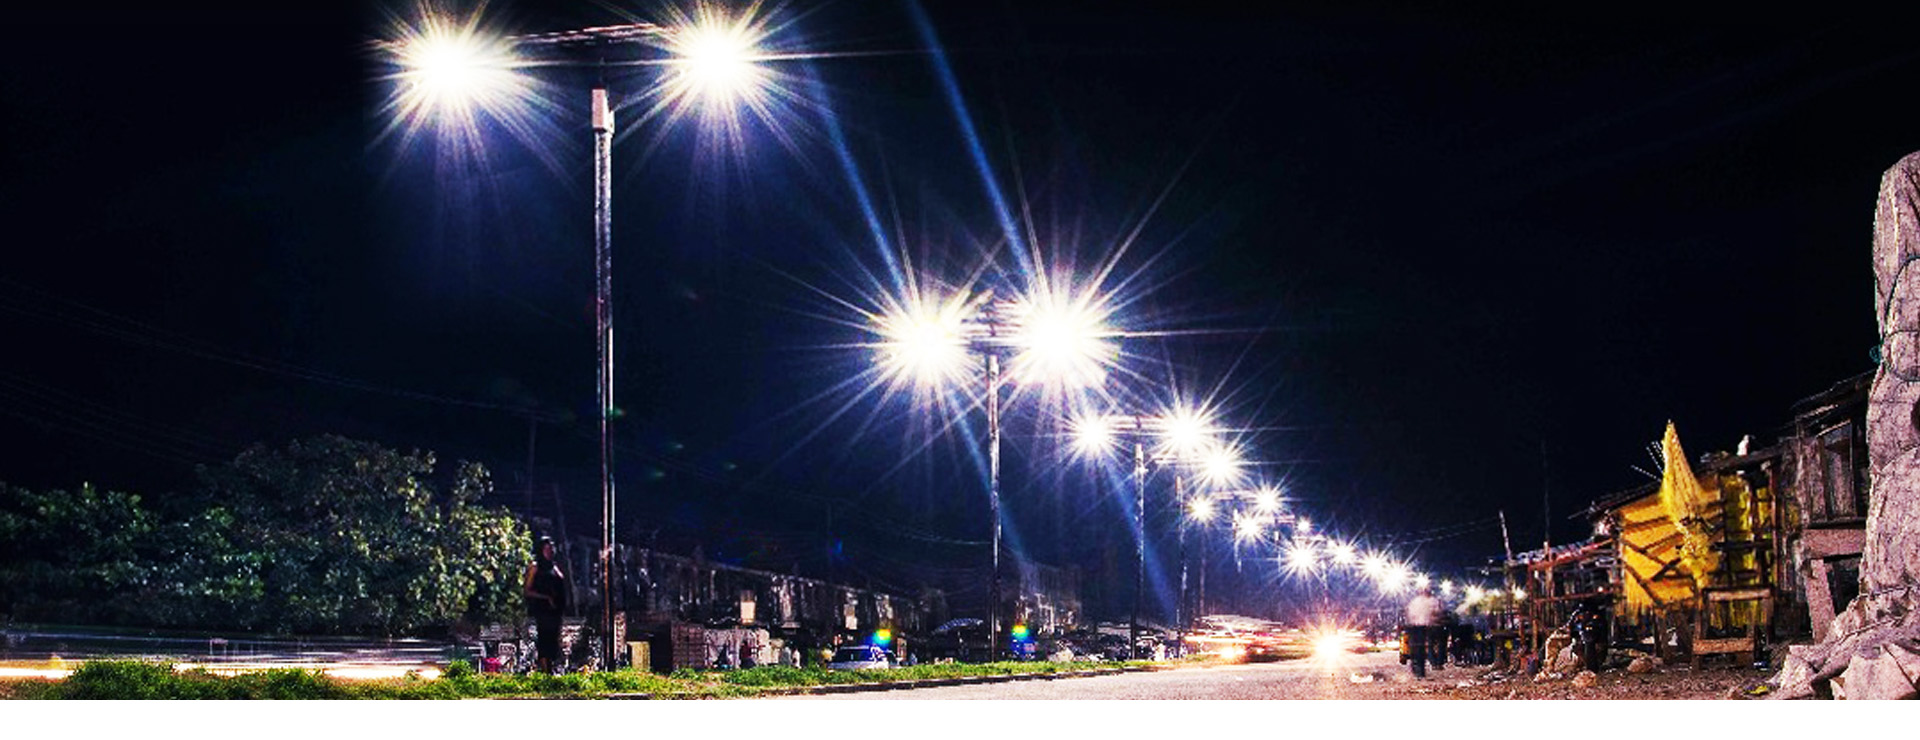 street light pollution